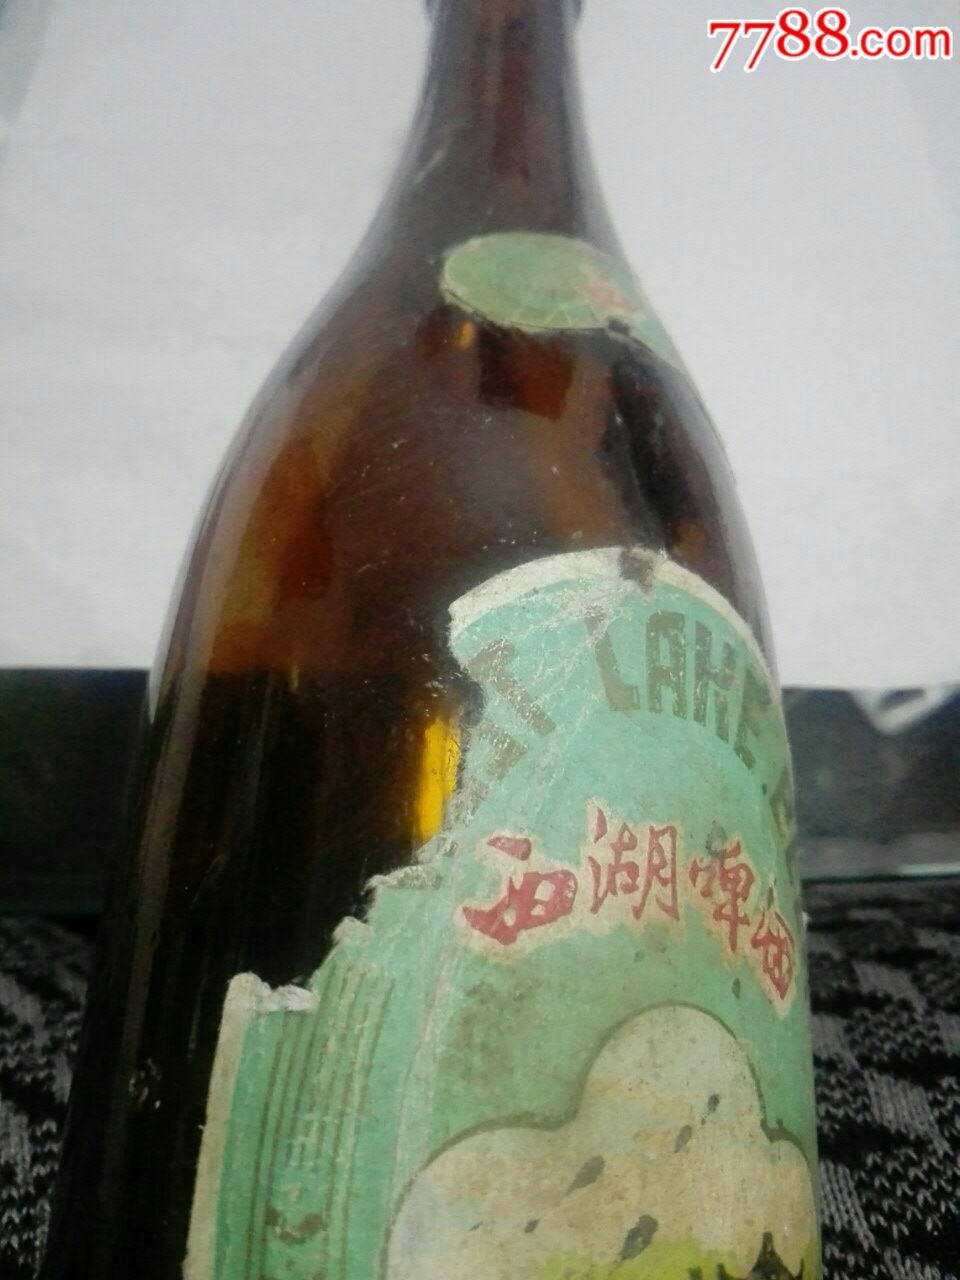 西湖之恋啤酒图片